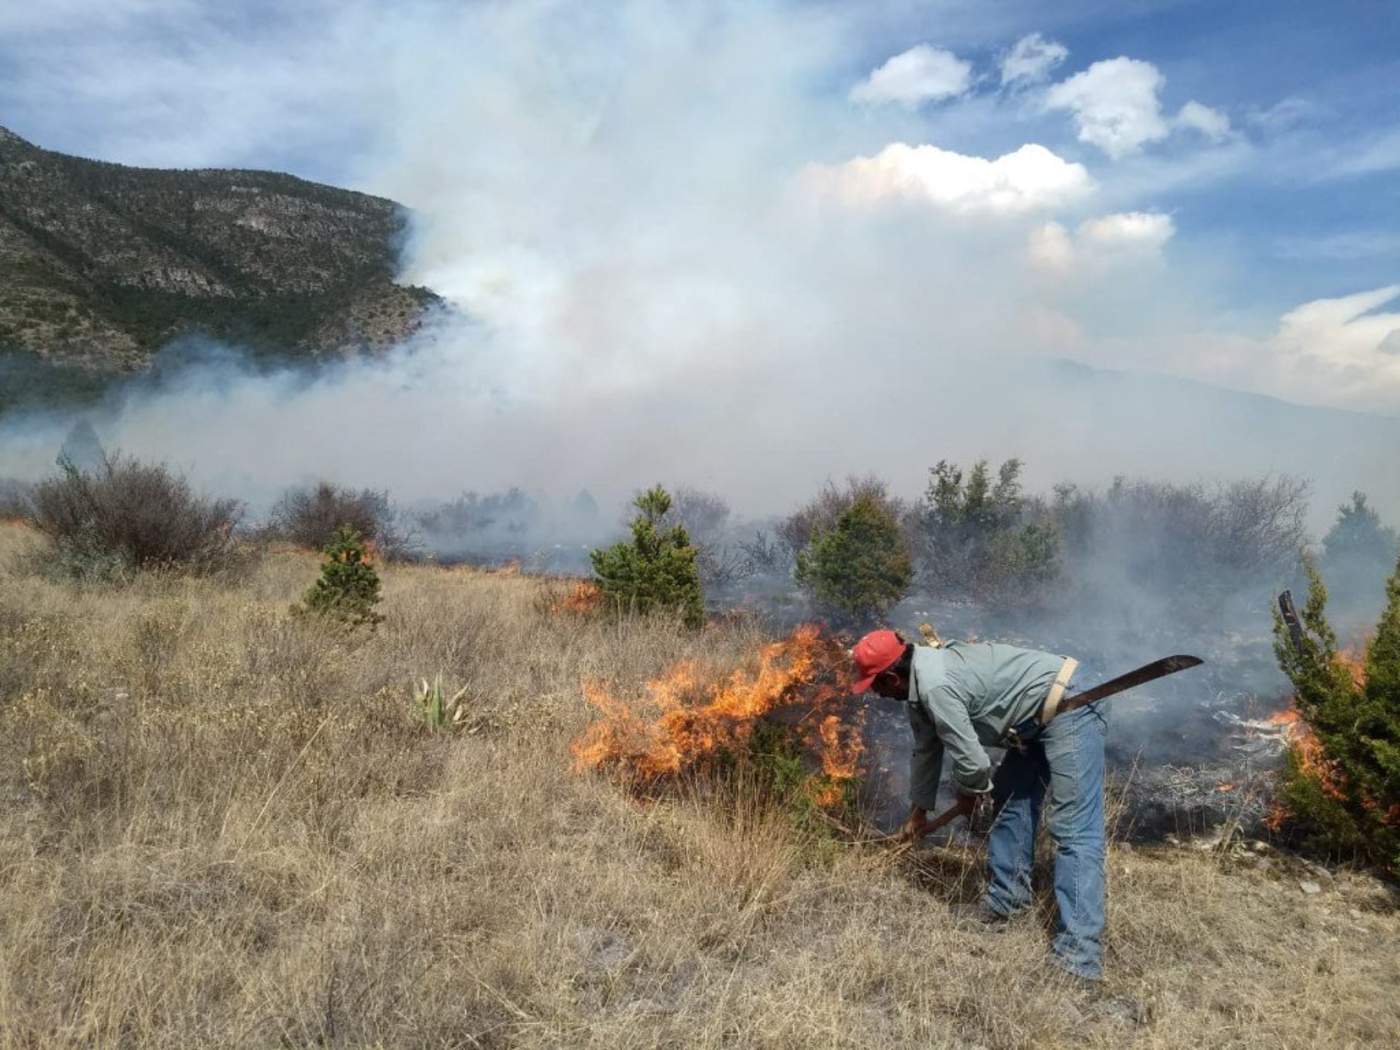 El reporte indica que al 21 de febrero, se registraron tres incendios que afectaron un total de 77 hectáreas. (ARCHIVO)